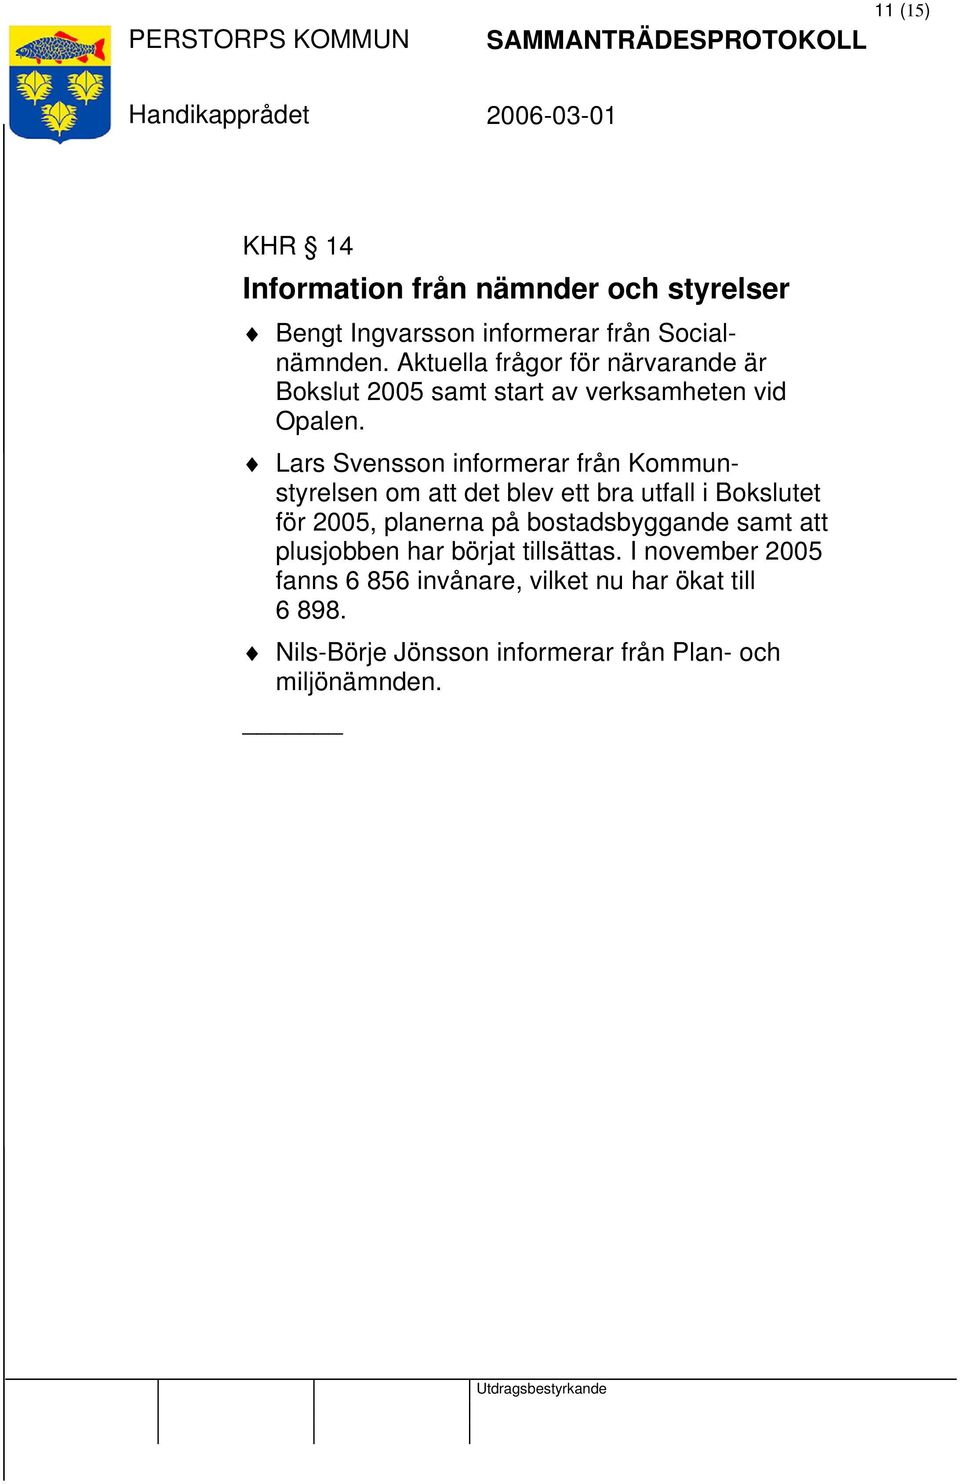 Lars Svensson informerar från Kommunstyrelsen om att det blev ett bra utfall i Bokslutet för 2005, planerna på